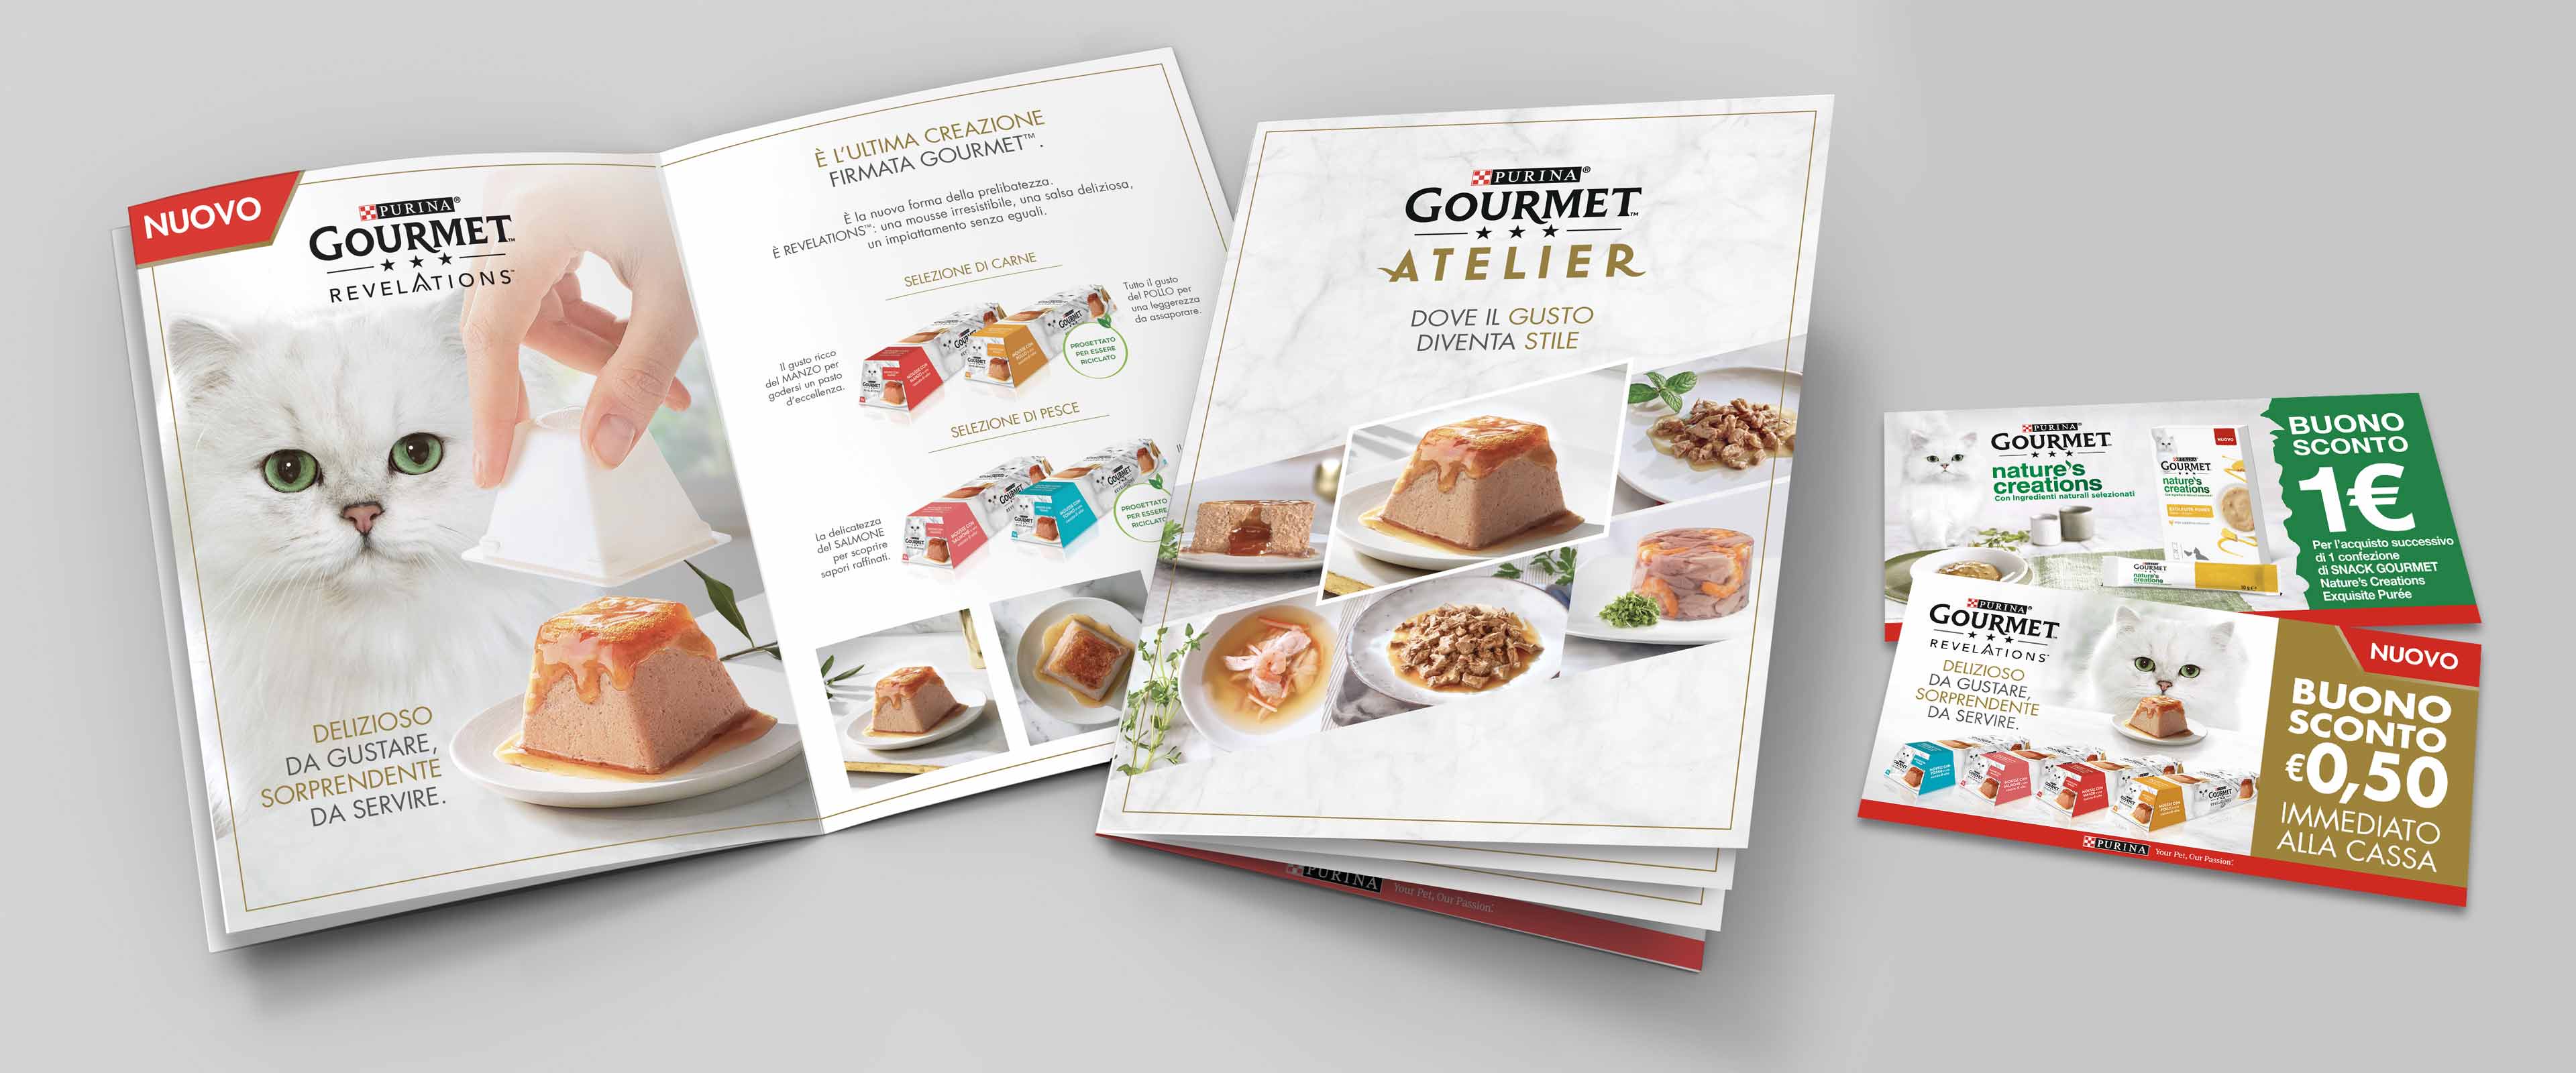 Gourmet Atelier launch brochure